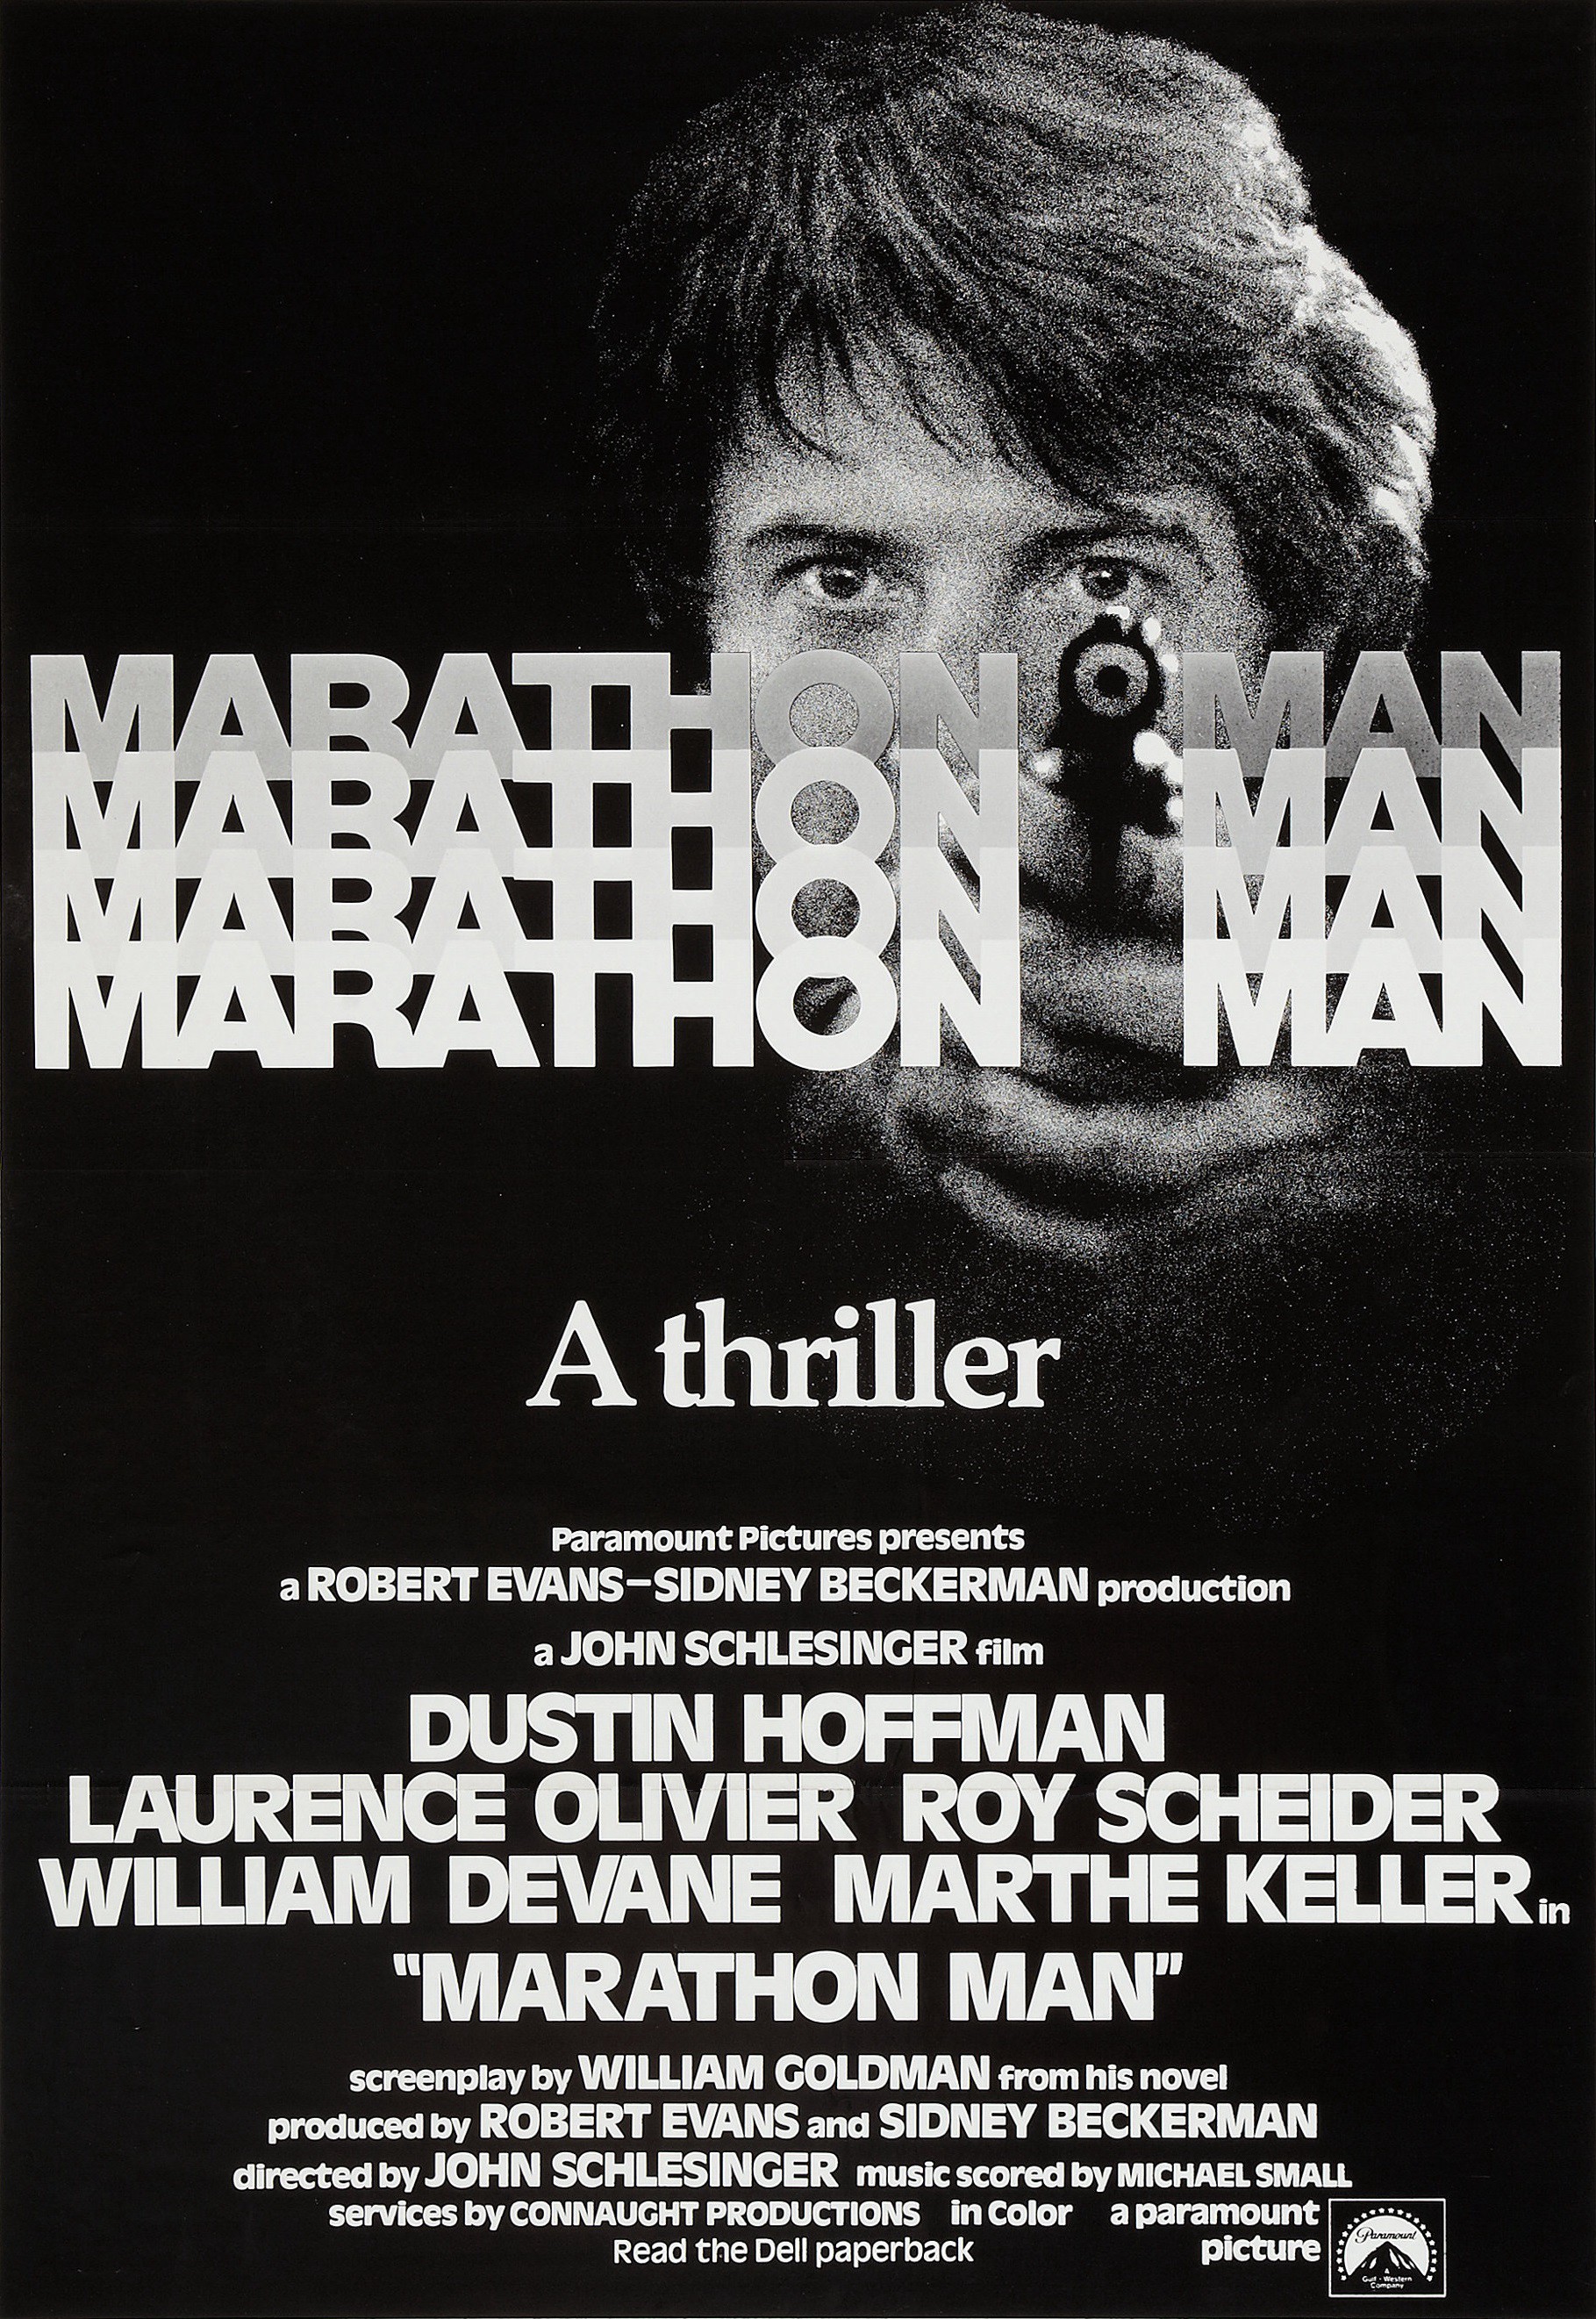 Vận Động Viên Marathon 1976